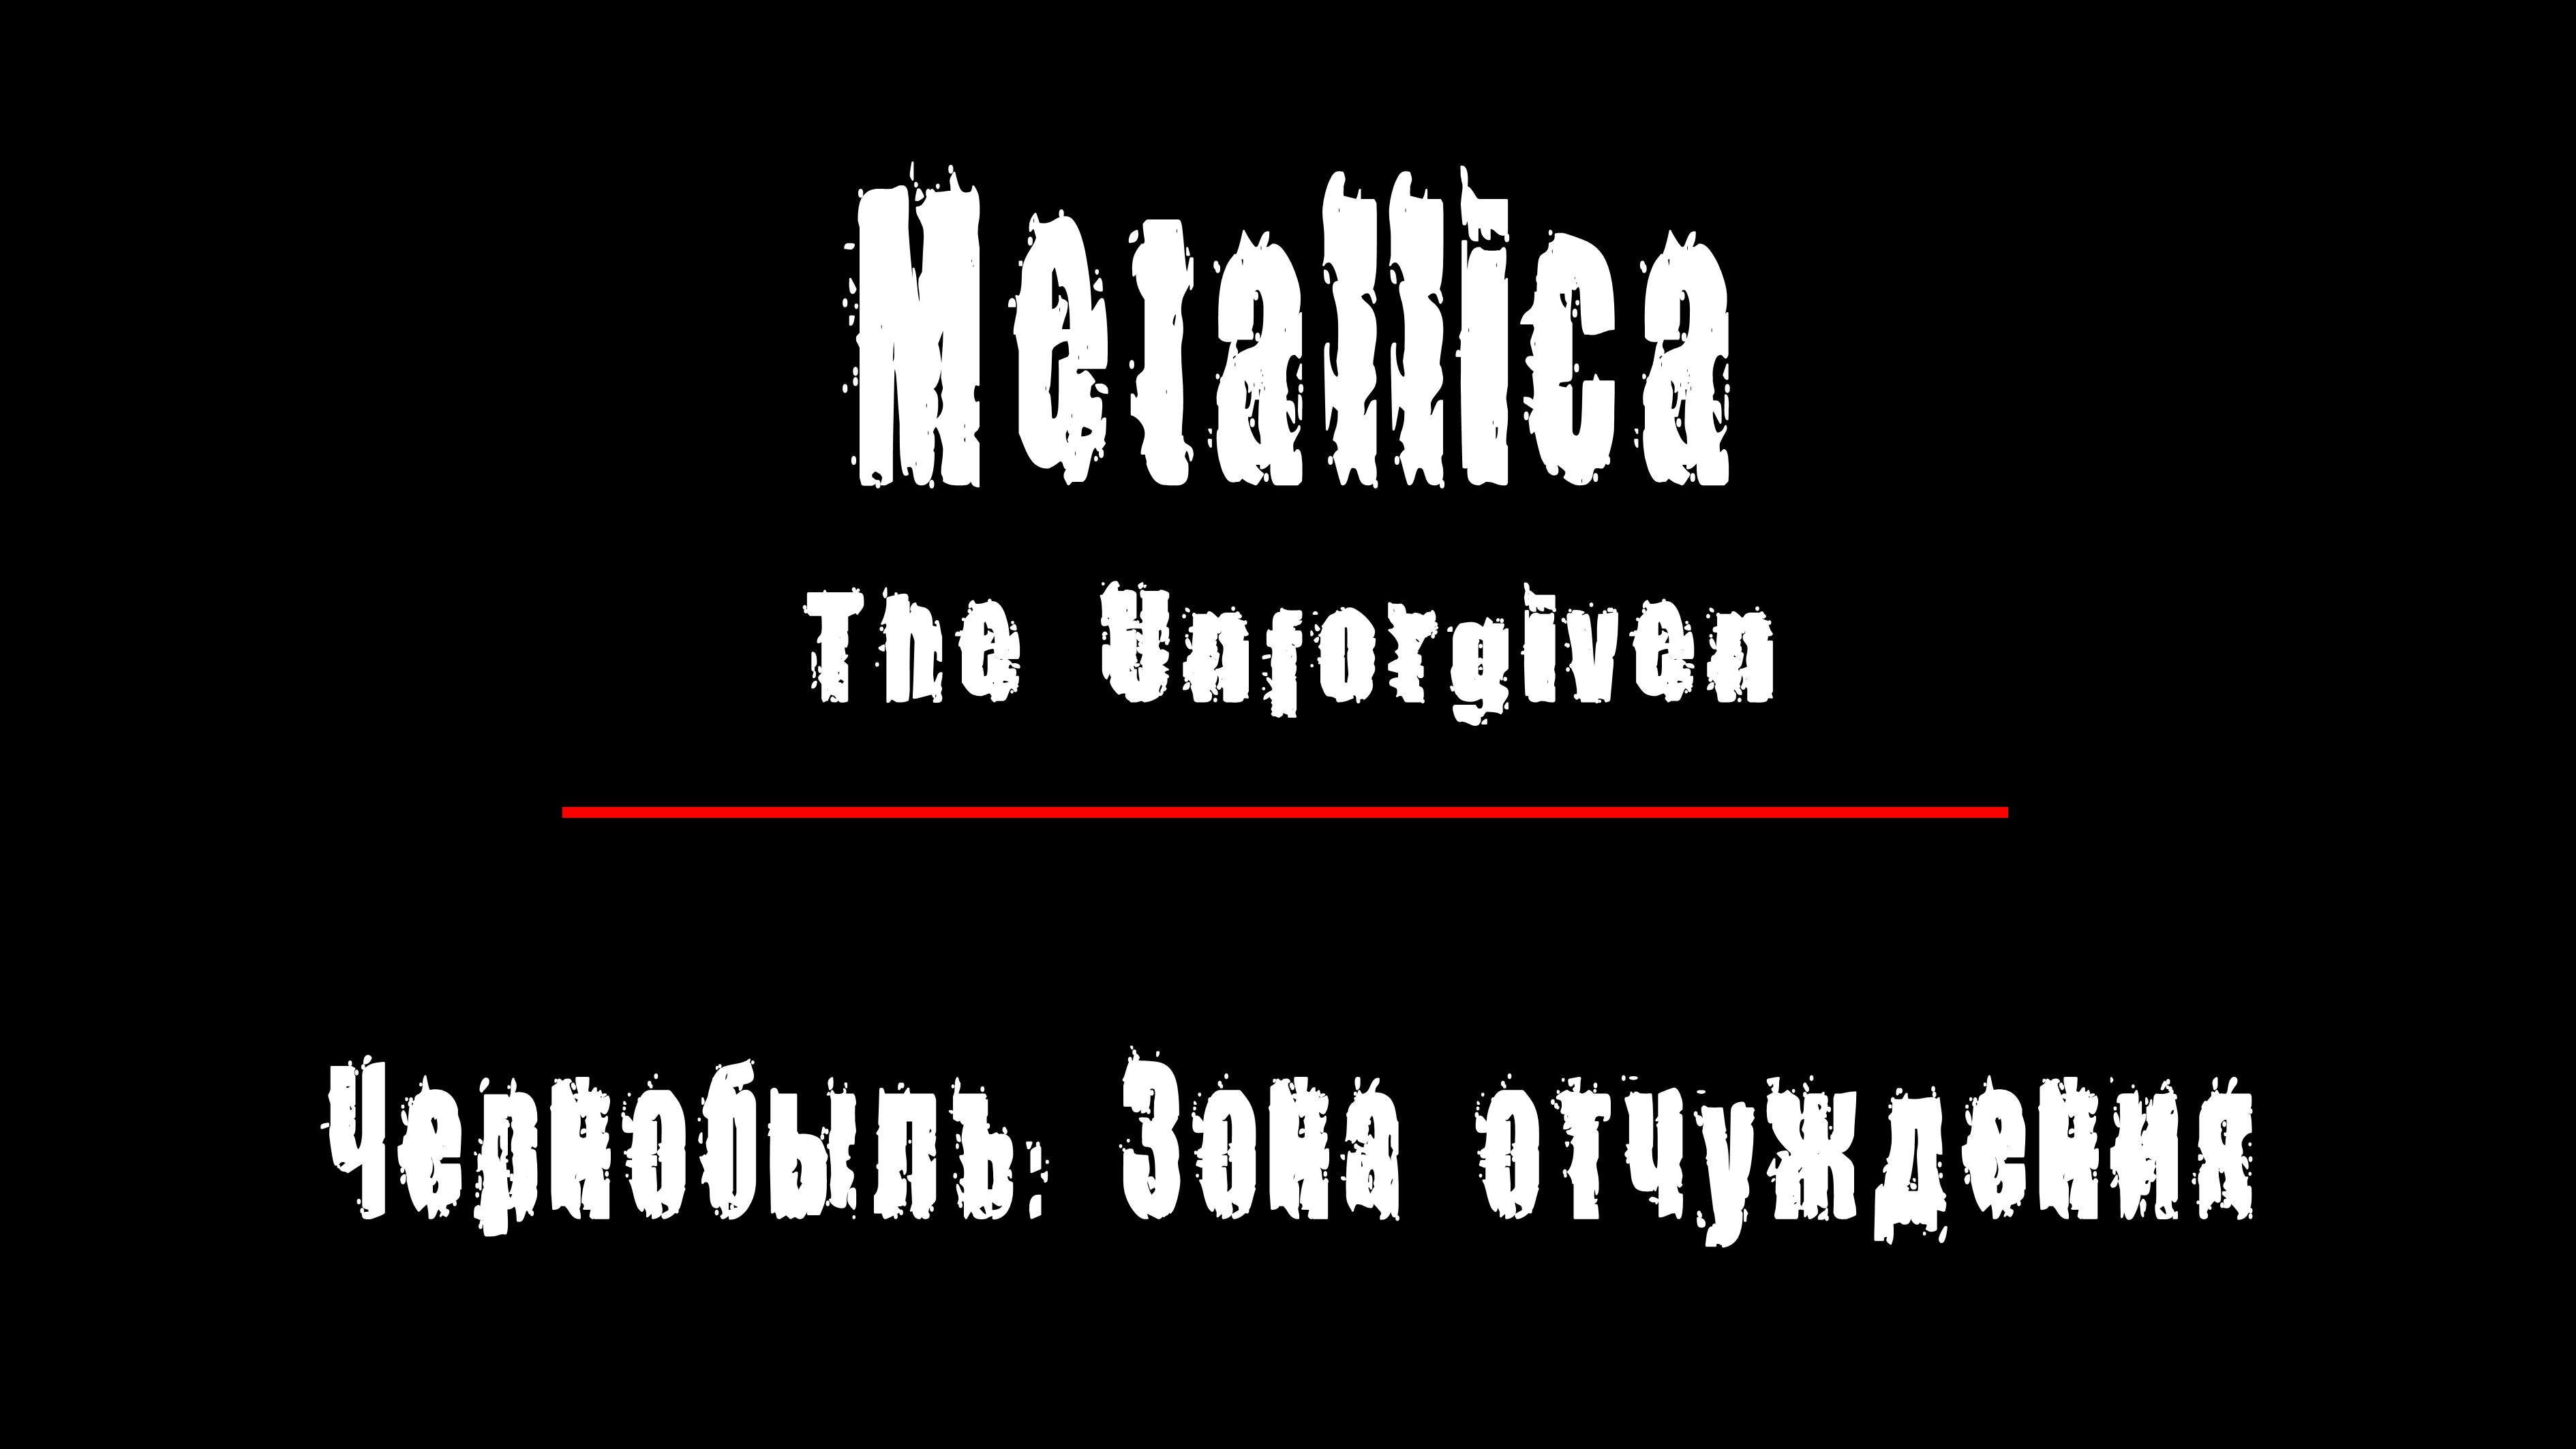 "THE UNFORGIVEN" - группа "Metallica". Чернобыль: Зона Отчуждения, Припять.